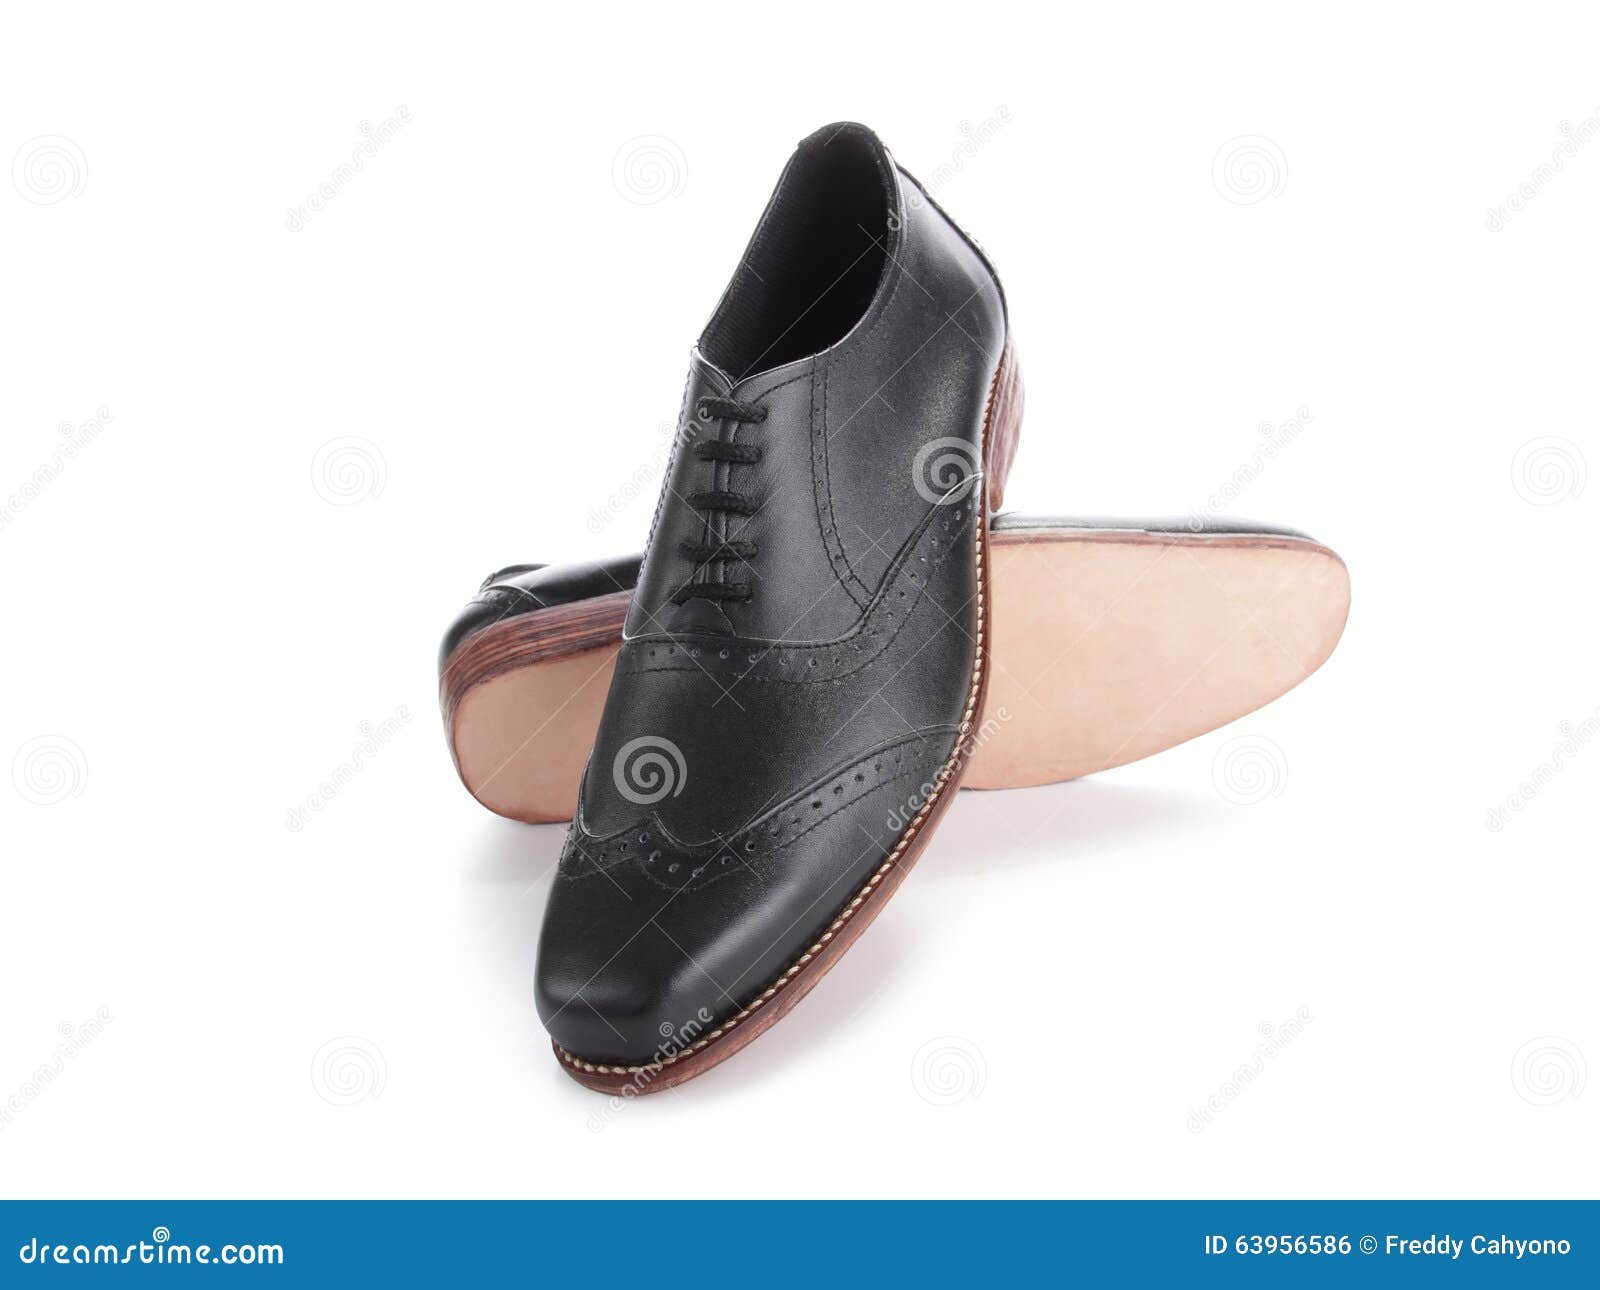 Black Shiny Shoes Displayed on White Stock Photo - Image of arrange ...